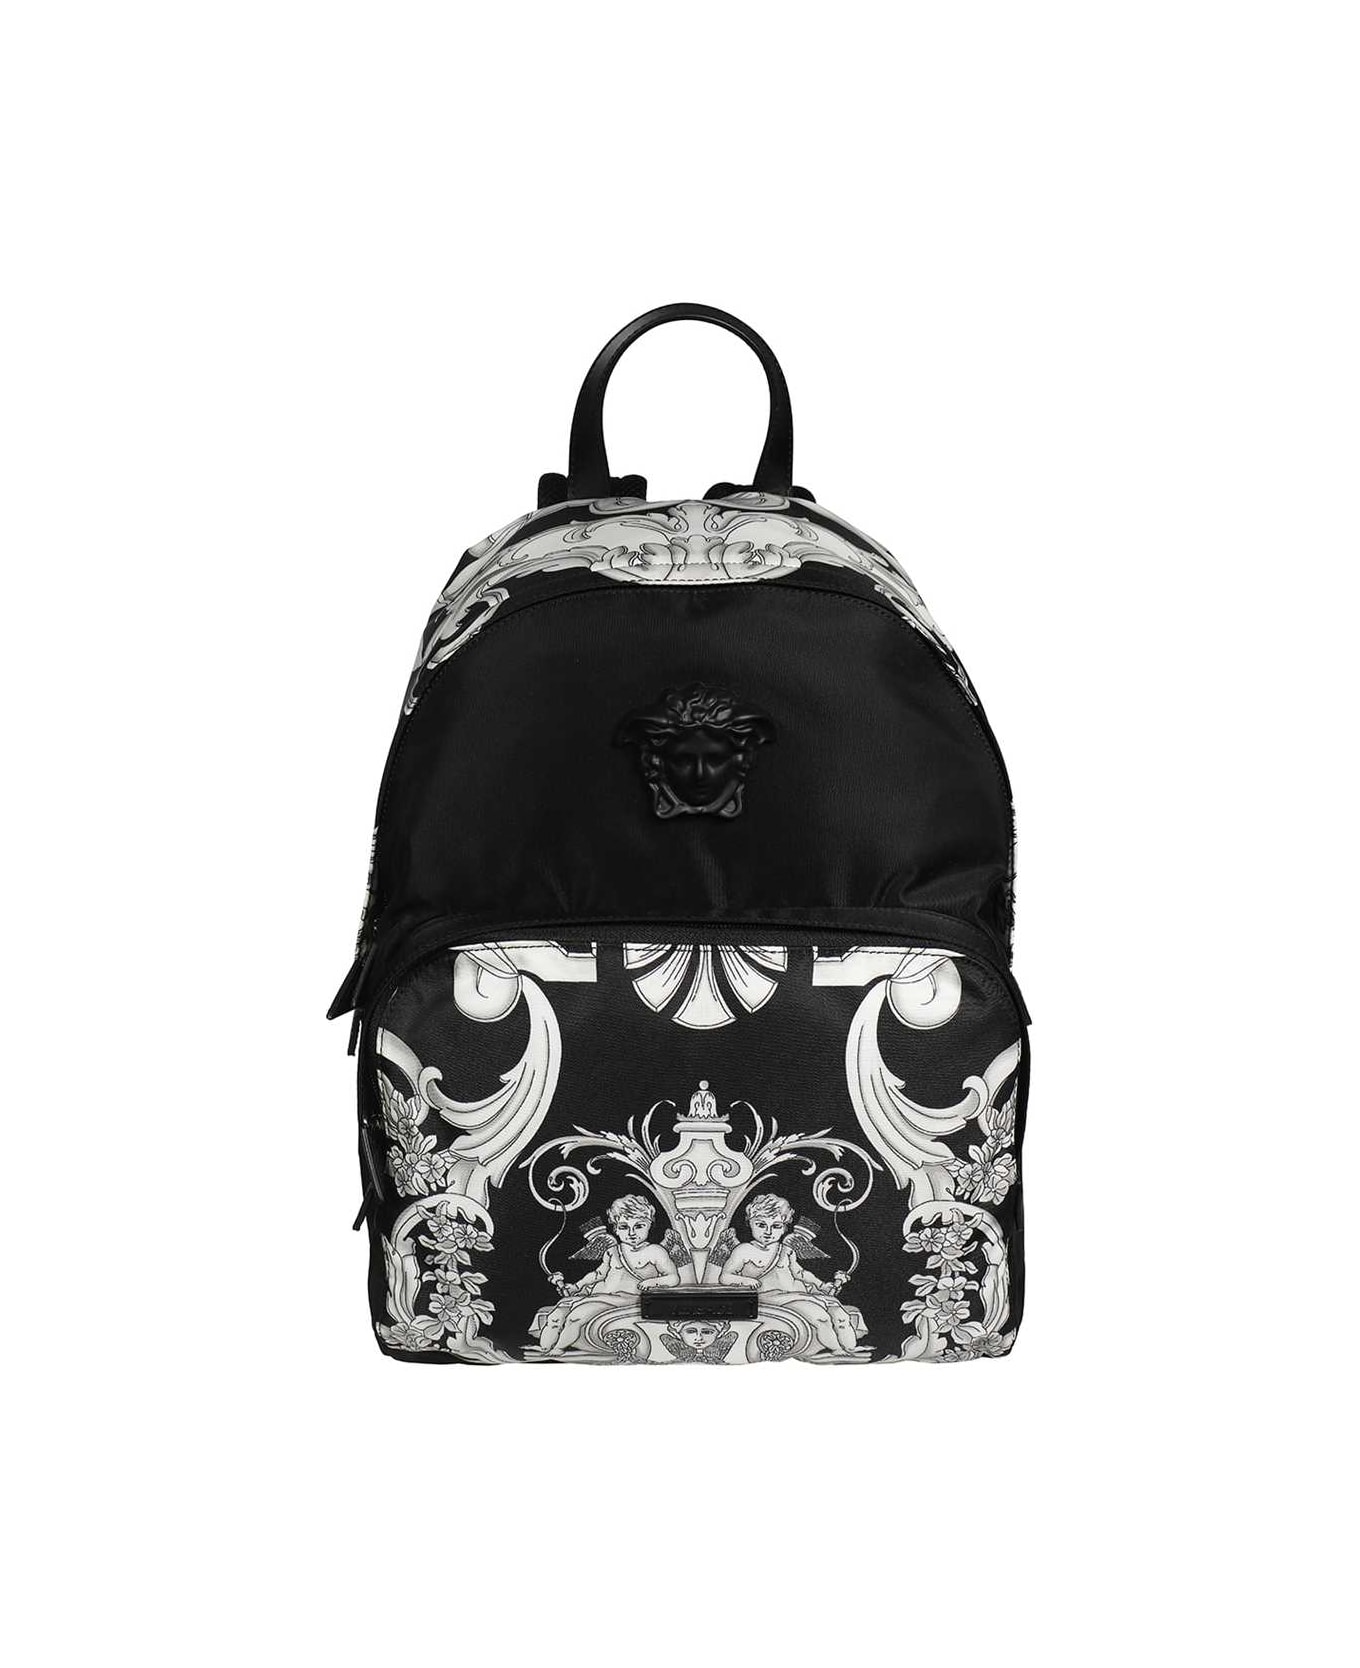 Versace Printed Backpack - black